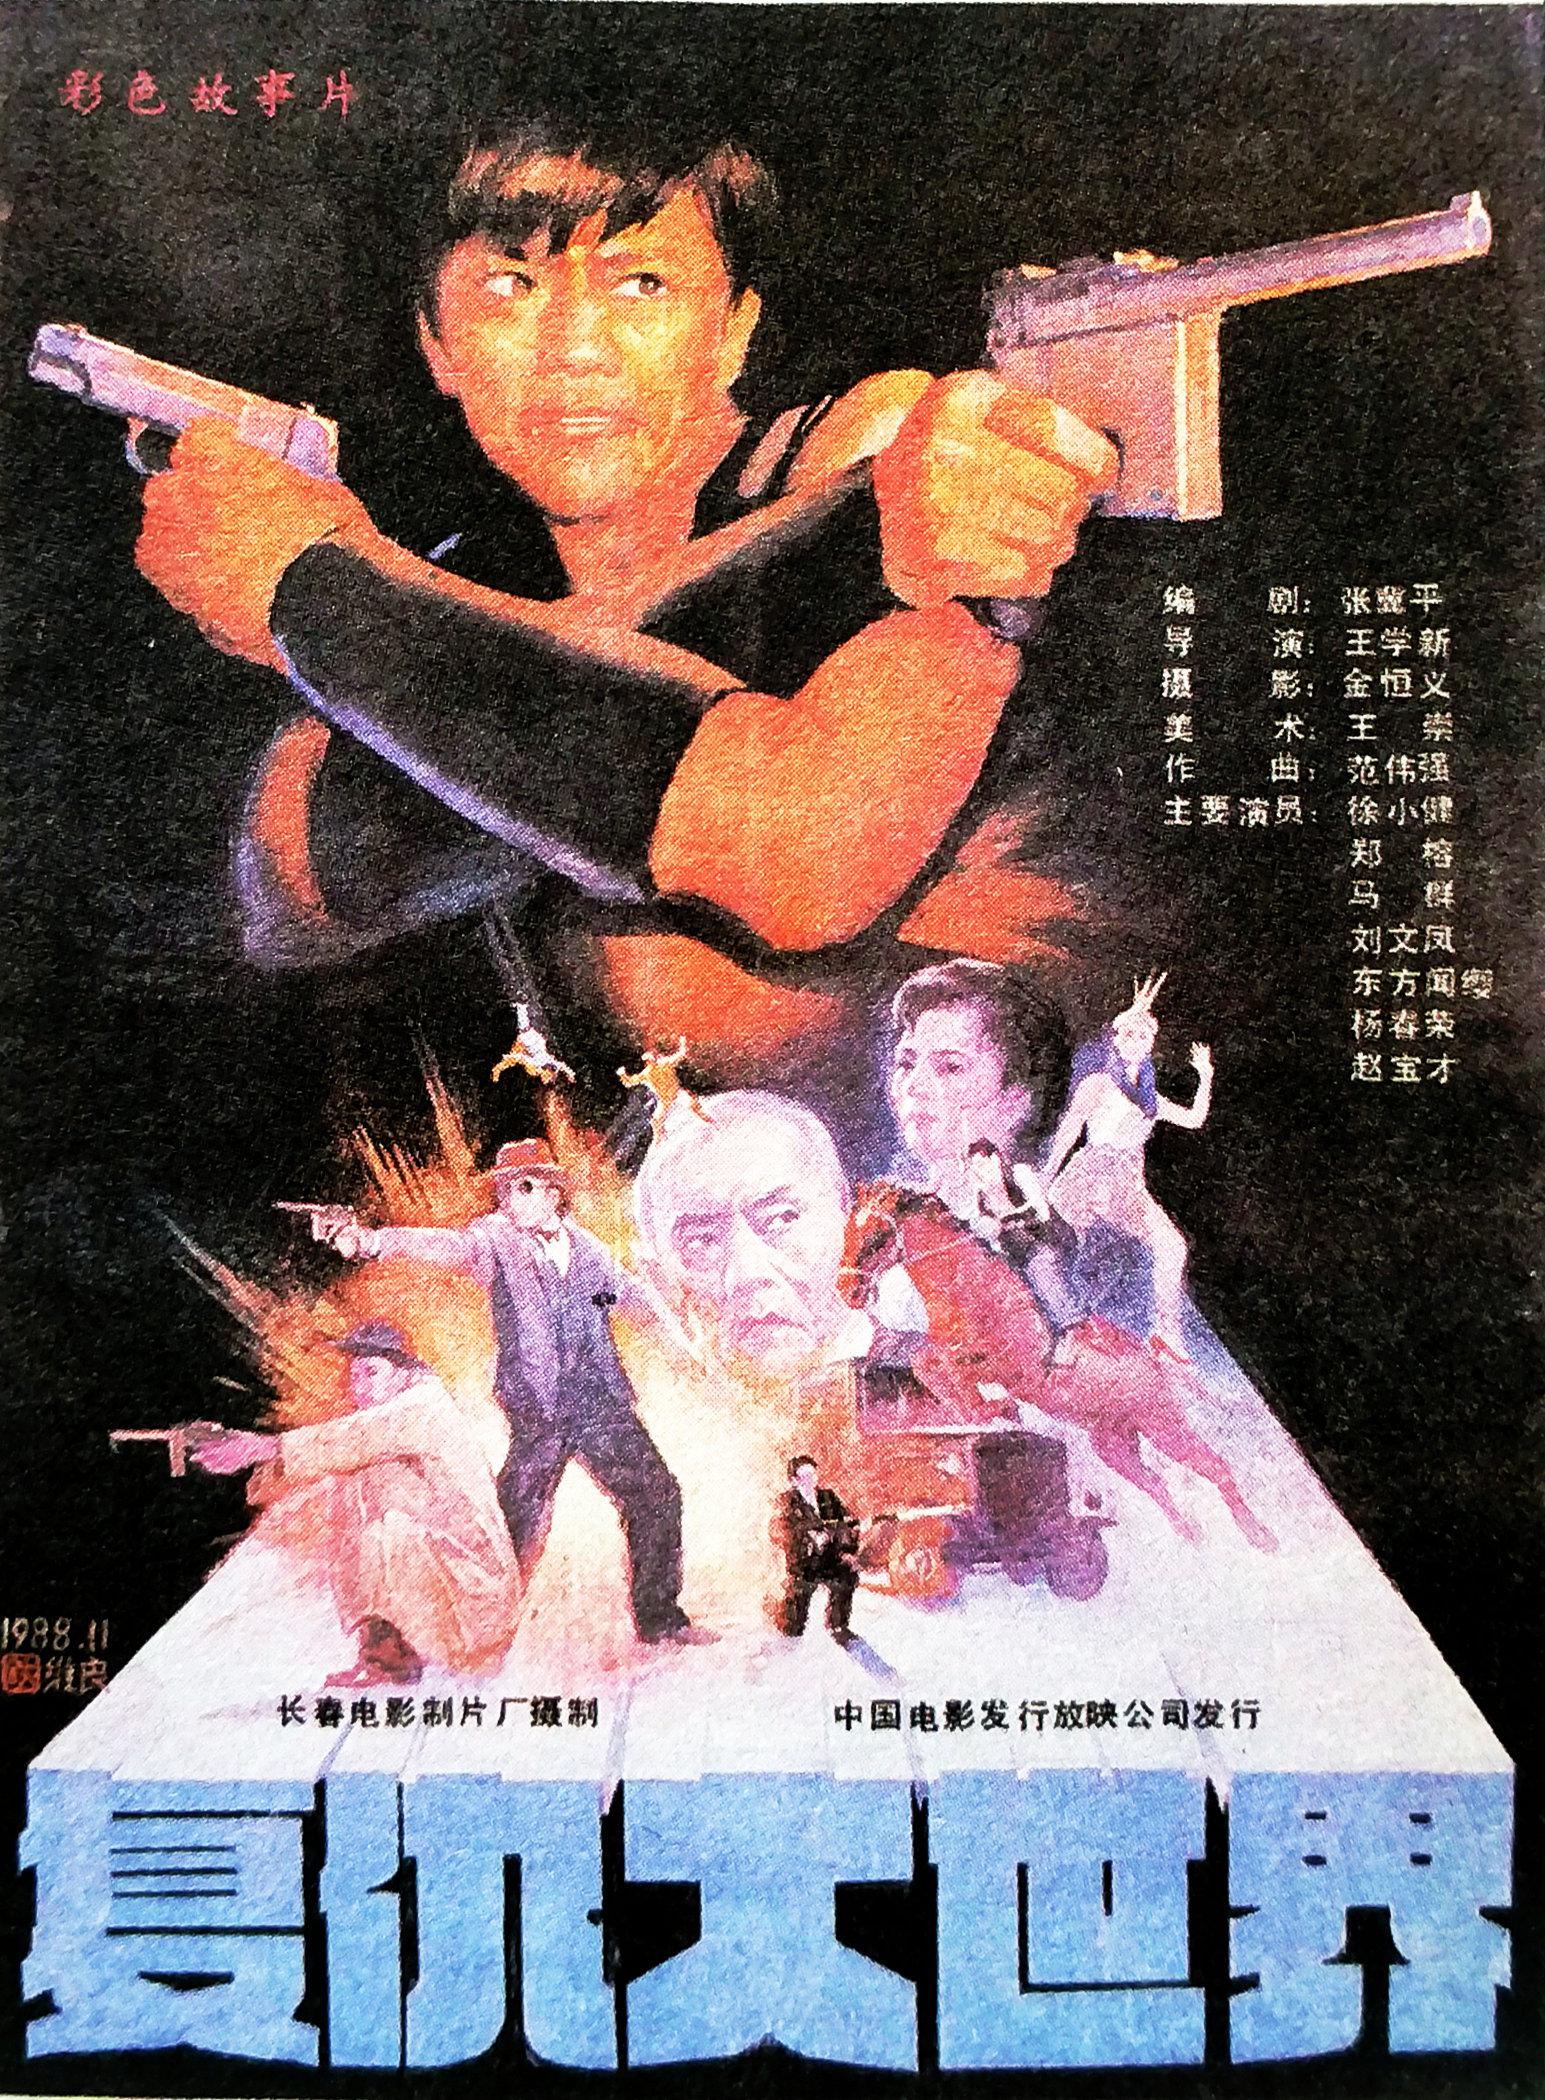 Fu chou da shi jie (1989) постер